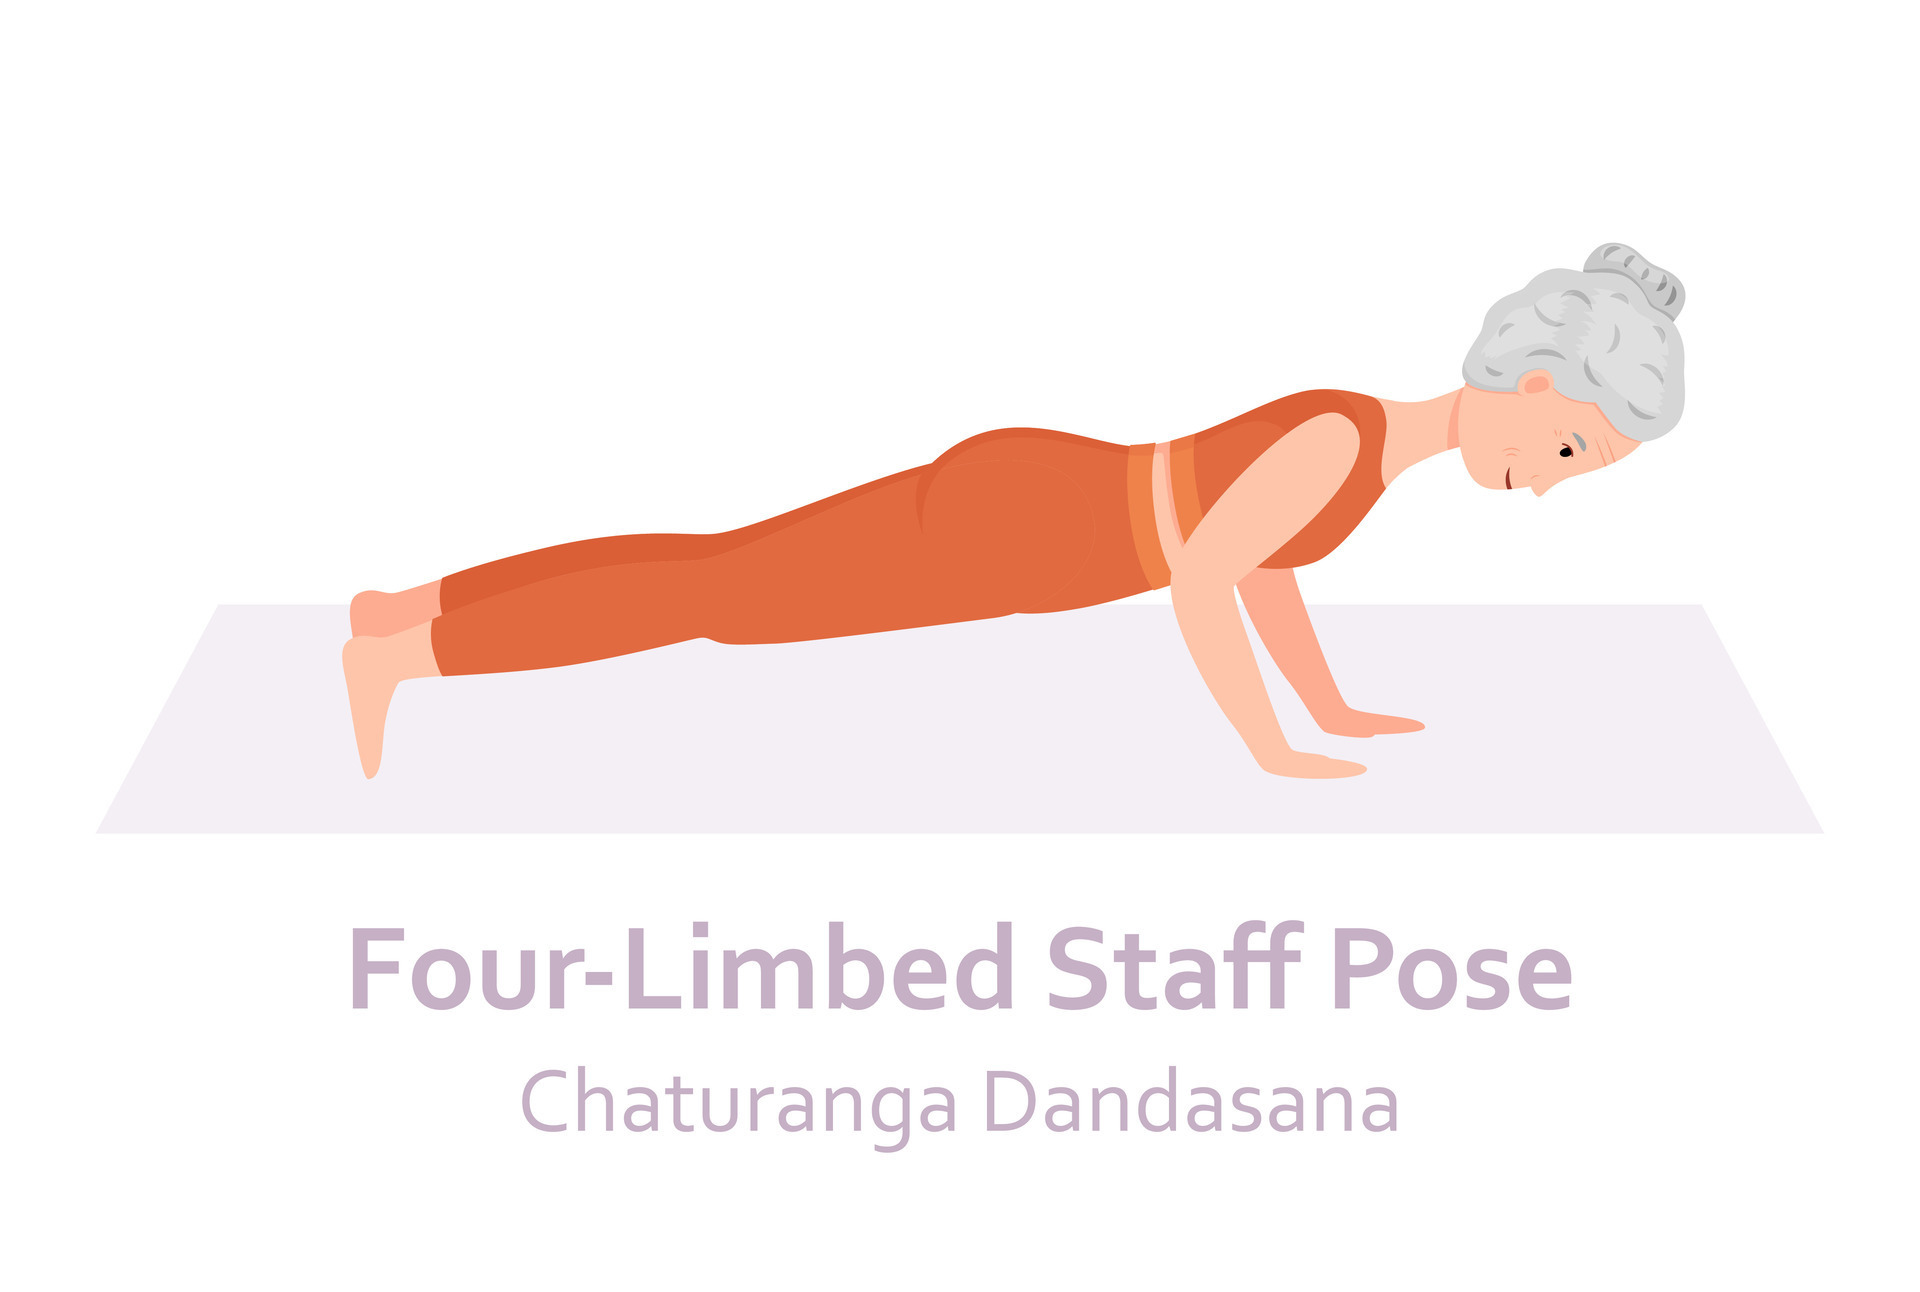 Chaturanga Dandasana - Four-Limbed Staff Pose